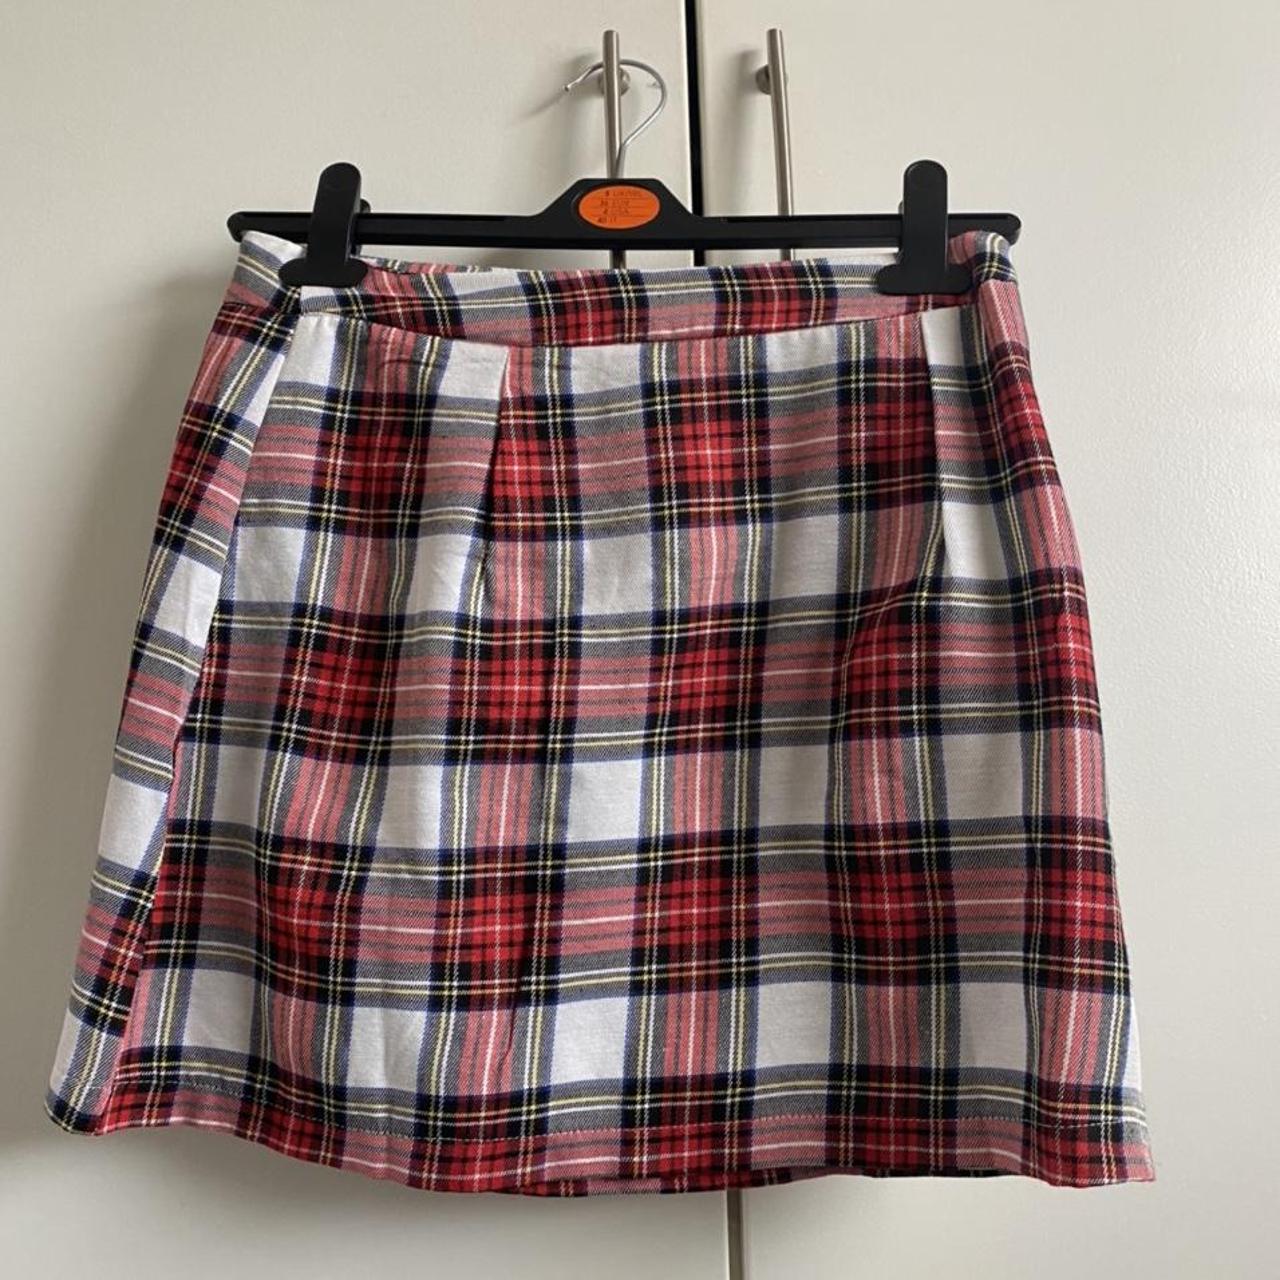 Tartan mini skirt. Never been worn before as didn’t... - Depop